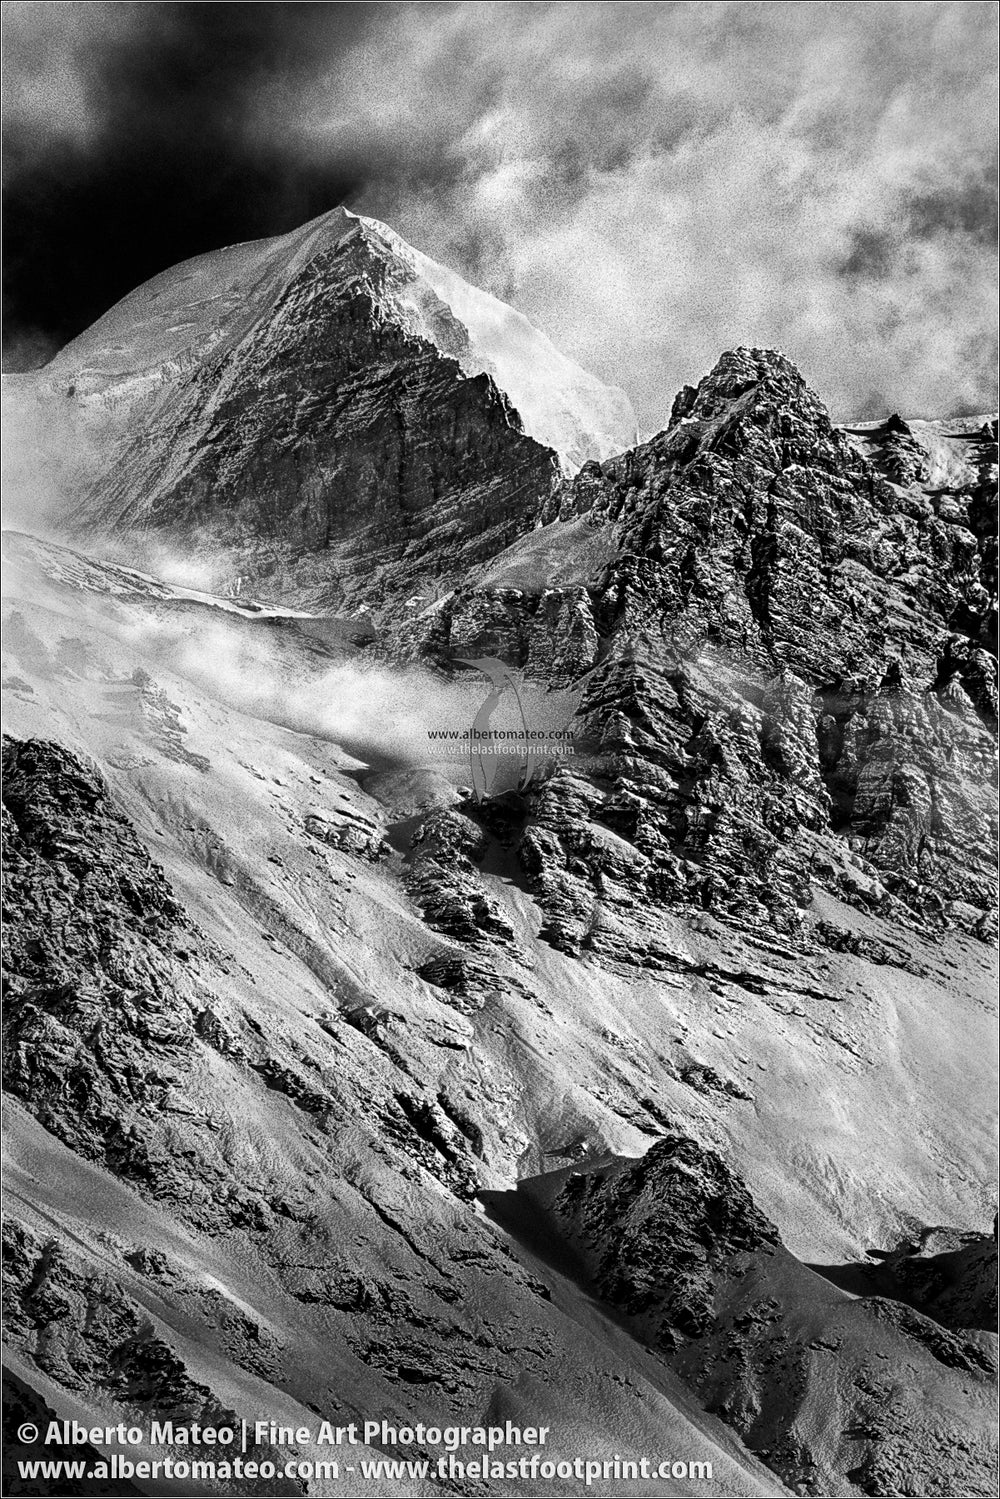 Thorung Peak from Letdar, Vertical Drama, Himalaya, Nepal.